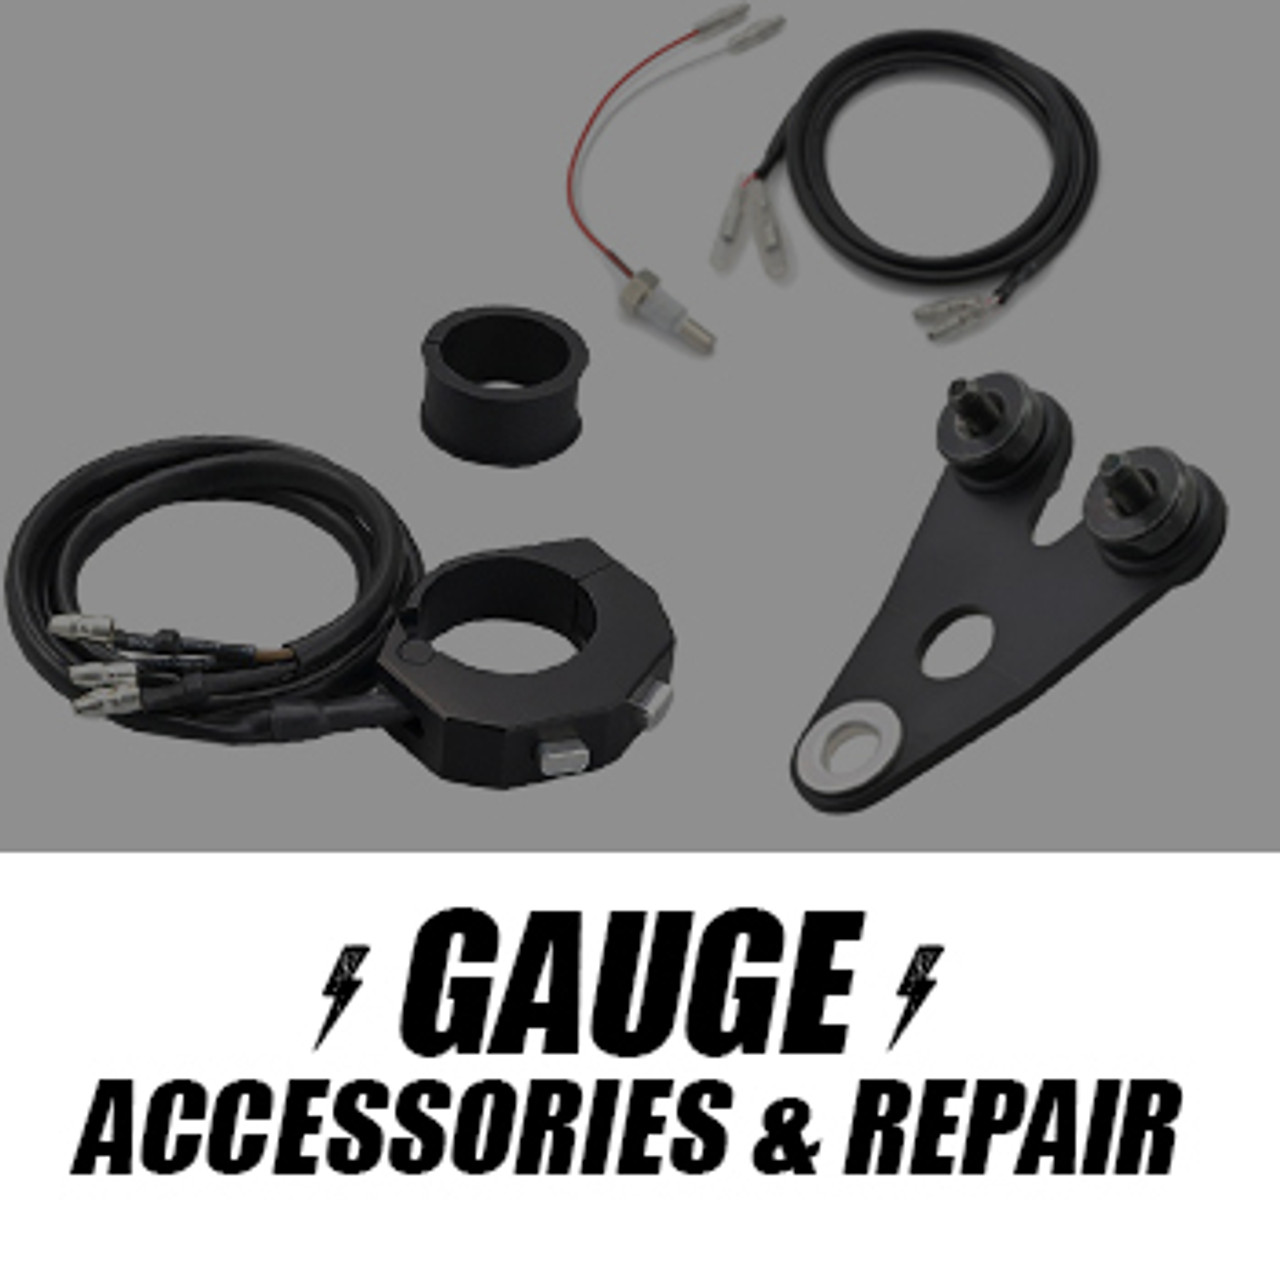 Accessories, Repair parts